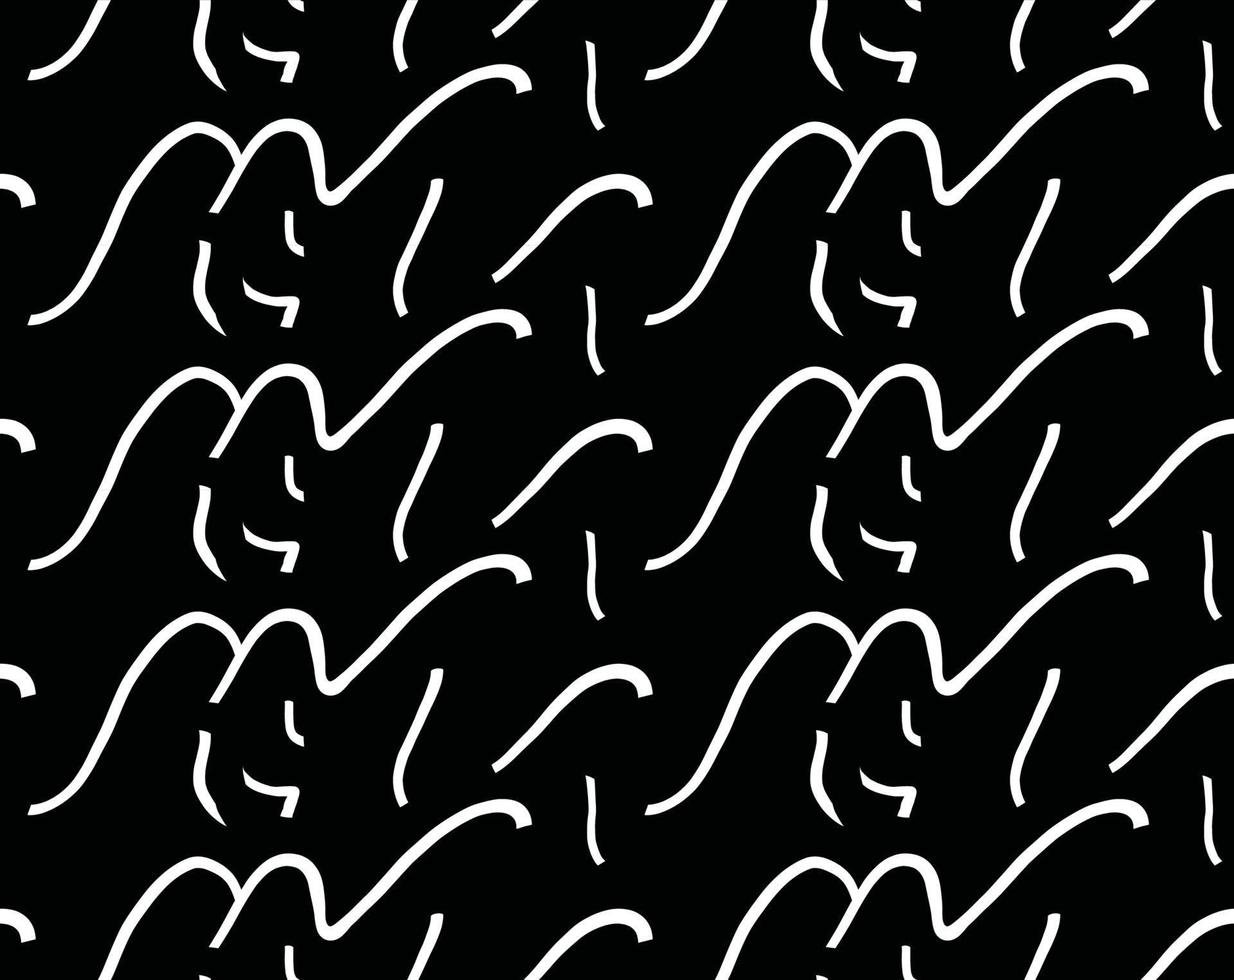 Vektor Textur Hintergrund, nahtloses Muster. handgezeichnete, schwarze, weiße Farben.